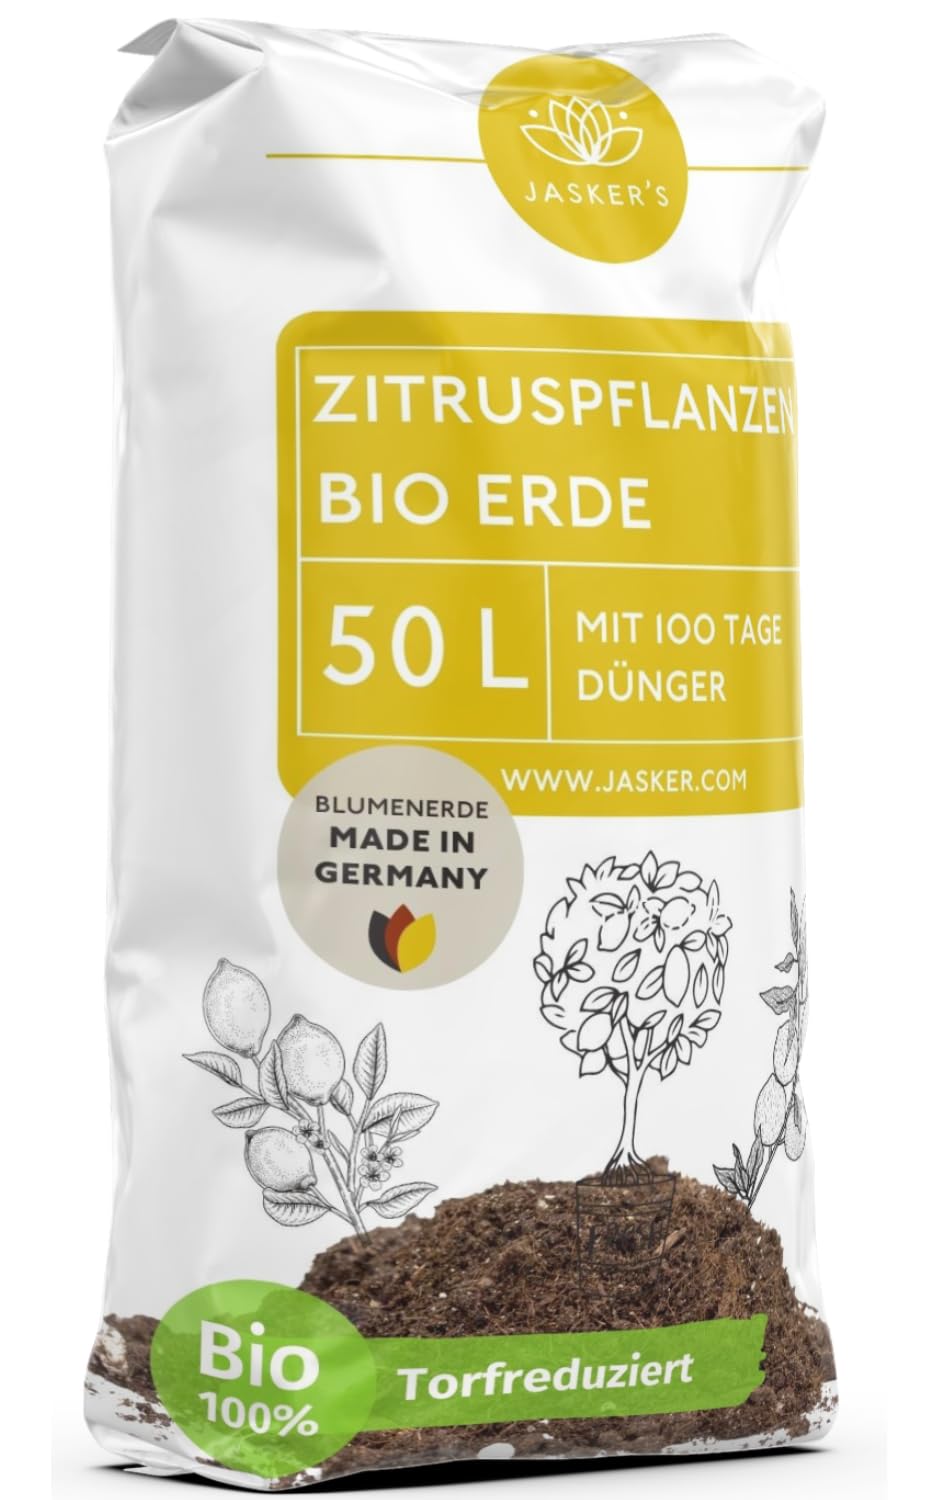 Bio Zitruserde 50 L mit Dünger - Mediterrane Pflanzenerde - 100% natürliche Rohstoffe - torfreduzierte Blumenerde & optimale Nährstoffversorgung für leckere Zitronen - Zitruspflanzenerde